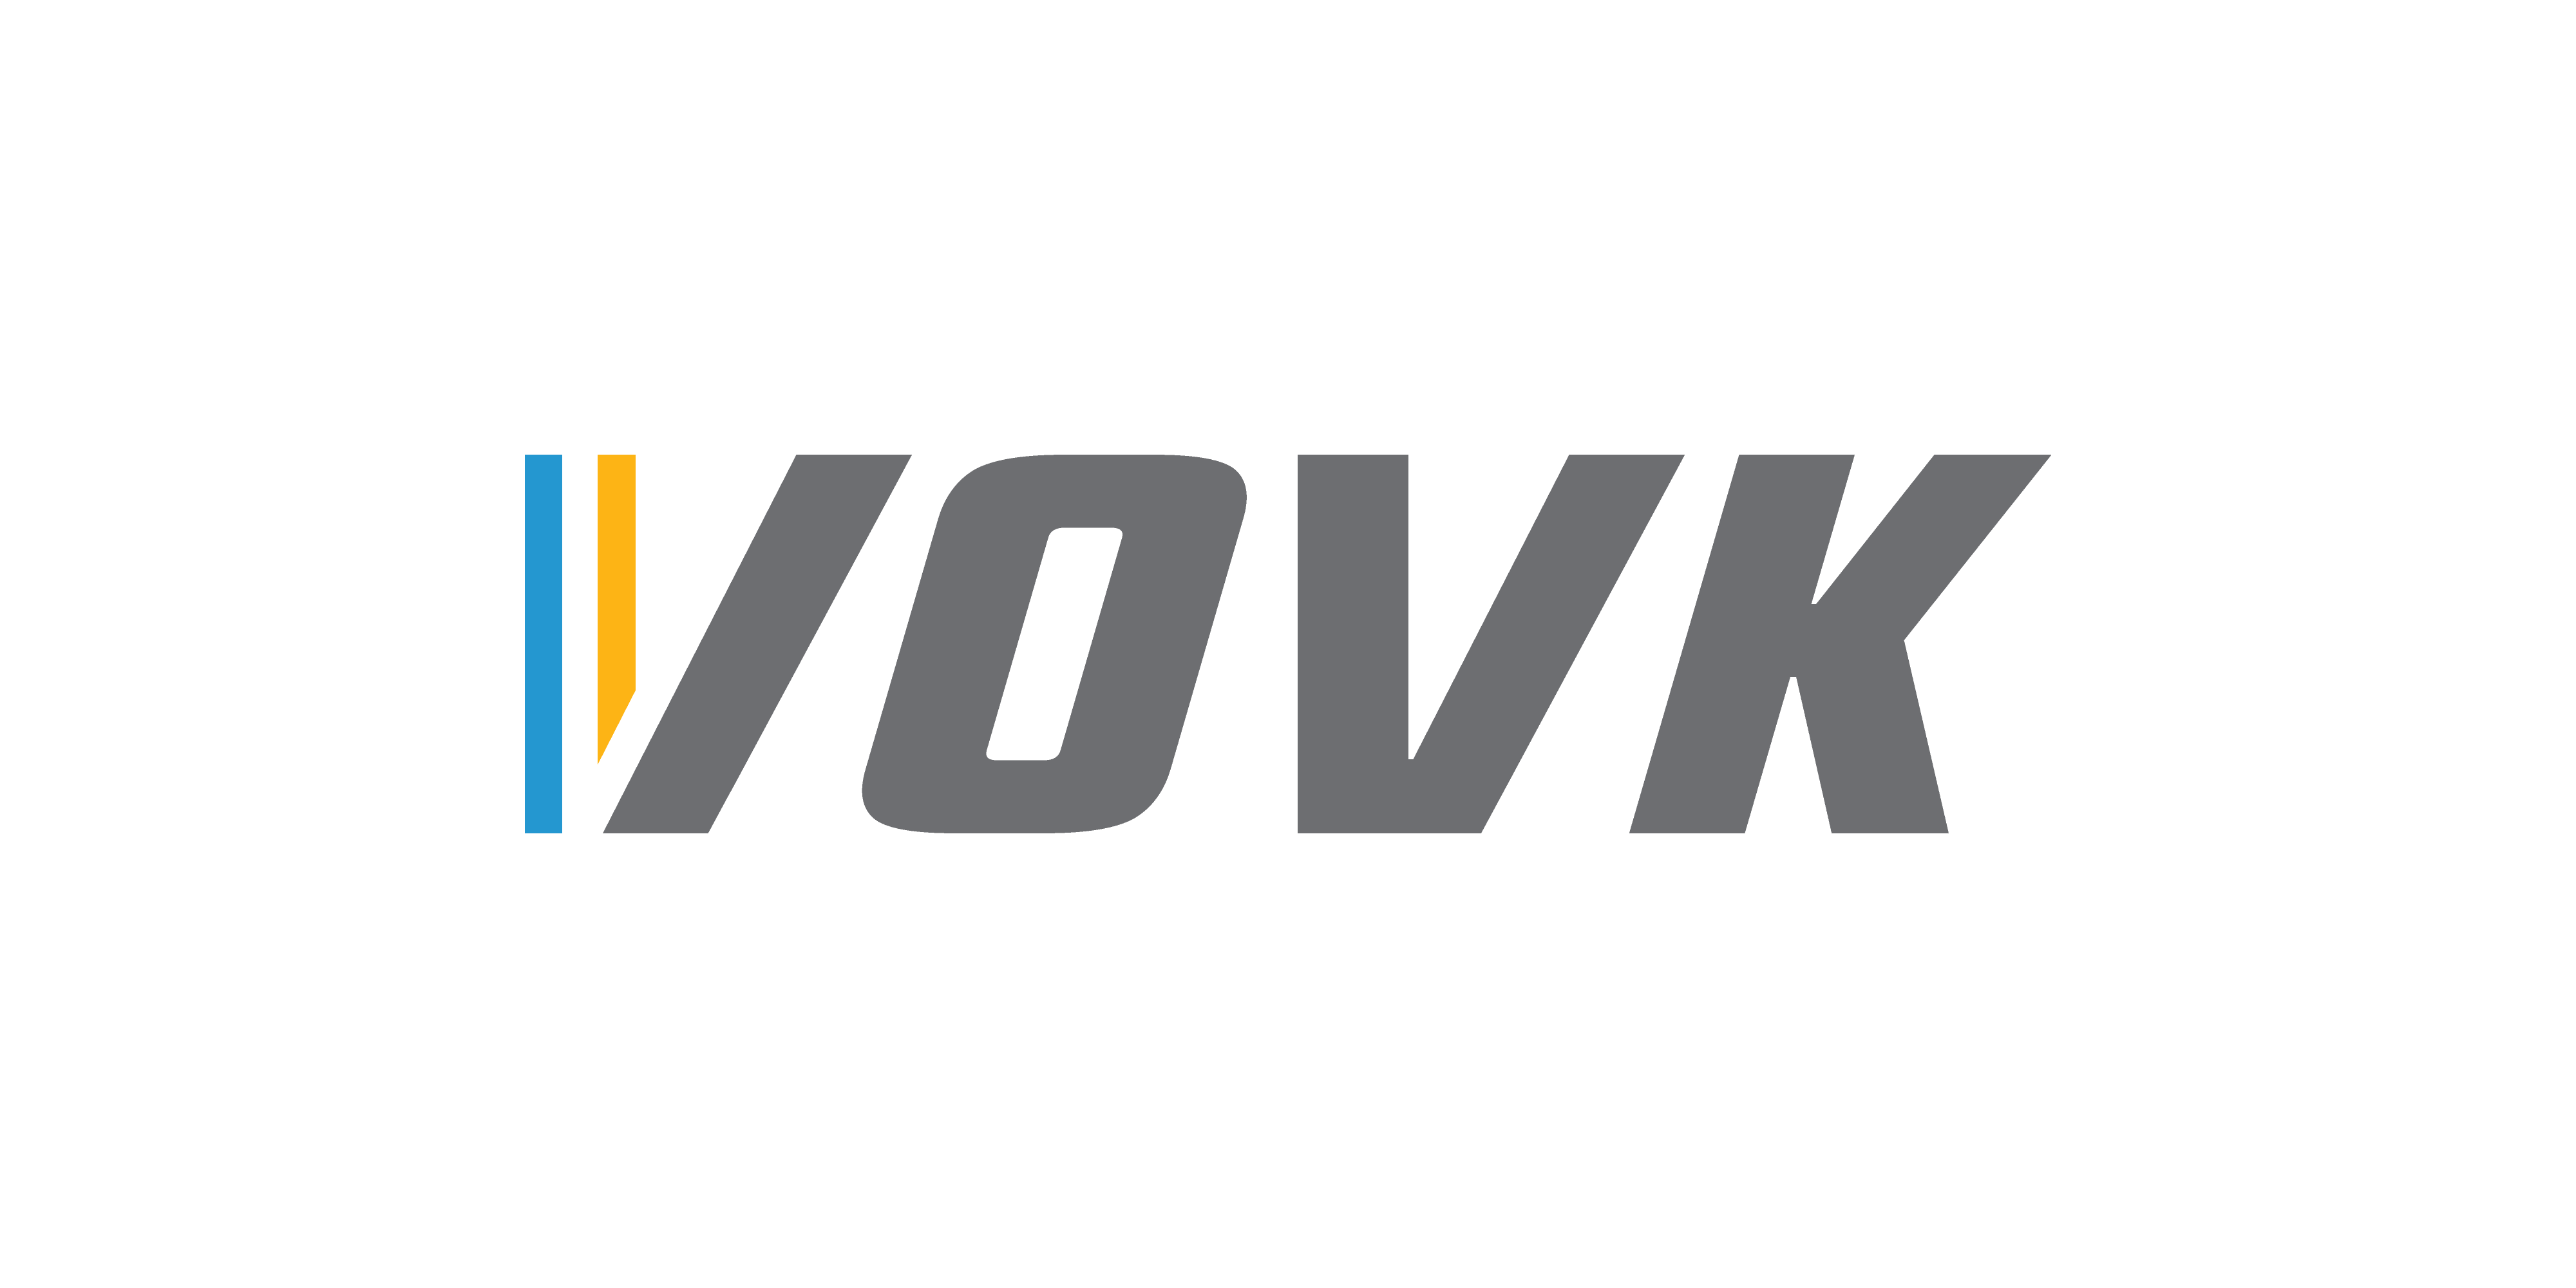 AC Vovk logo